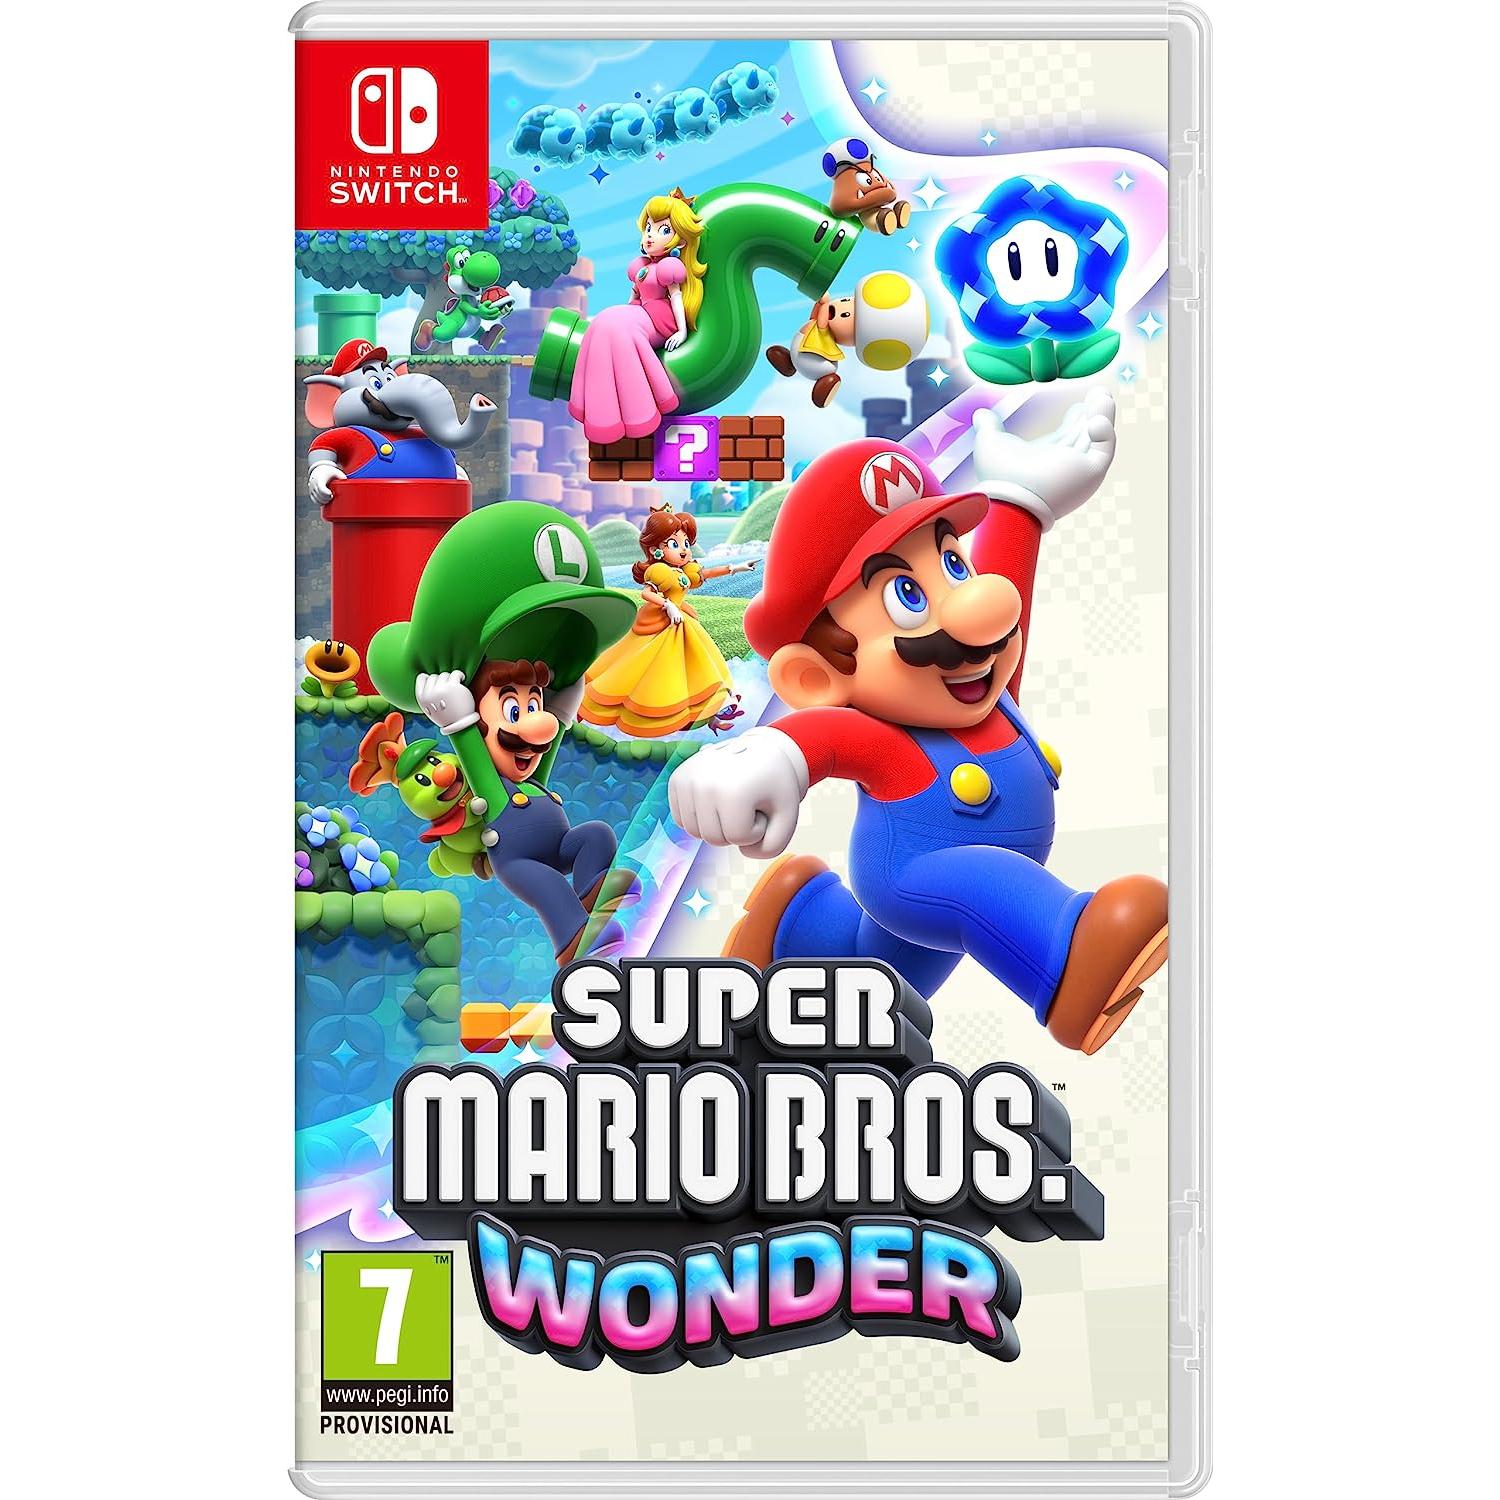 Videojuego Super Mario Bros. Wonder para Nintendo Switch (preventa) por sólo 46,99€ ¡¡38% de descuento!!